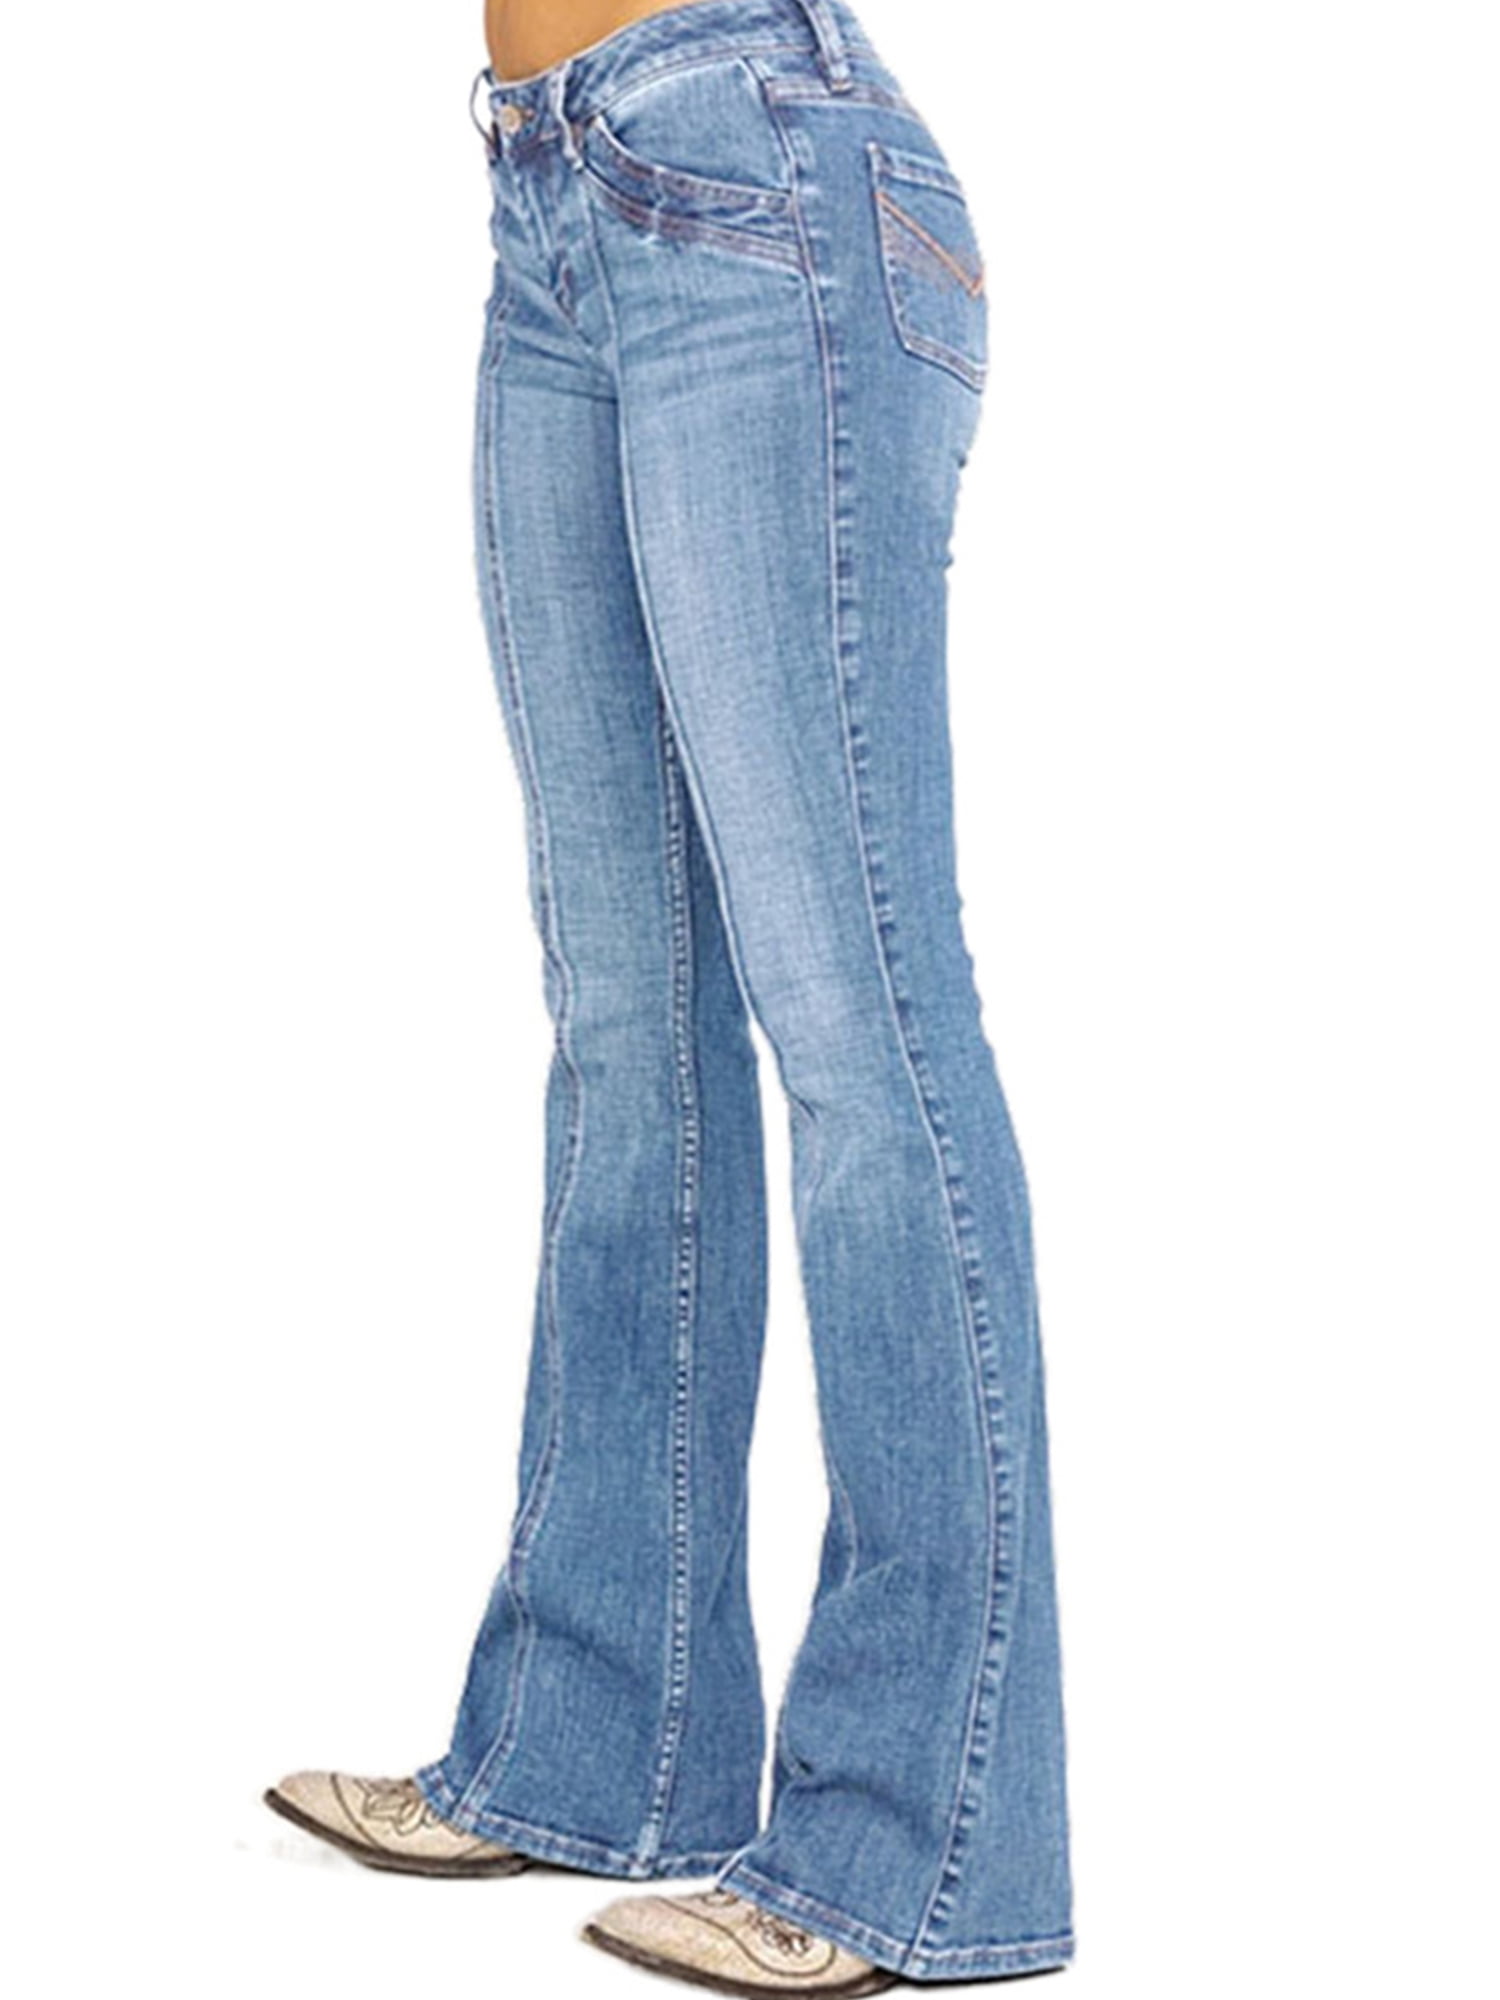 LAPA Women Low Rise Bootcut Stretch Jeans - Walmart.com